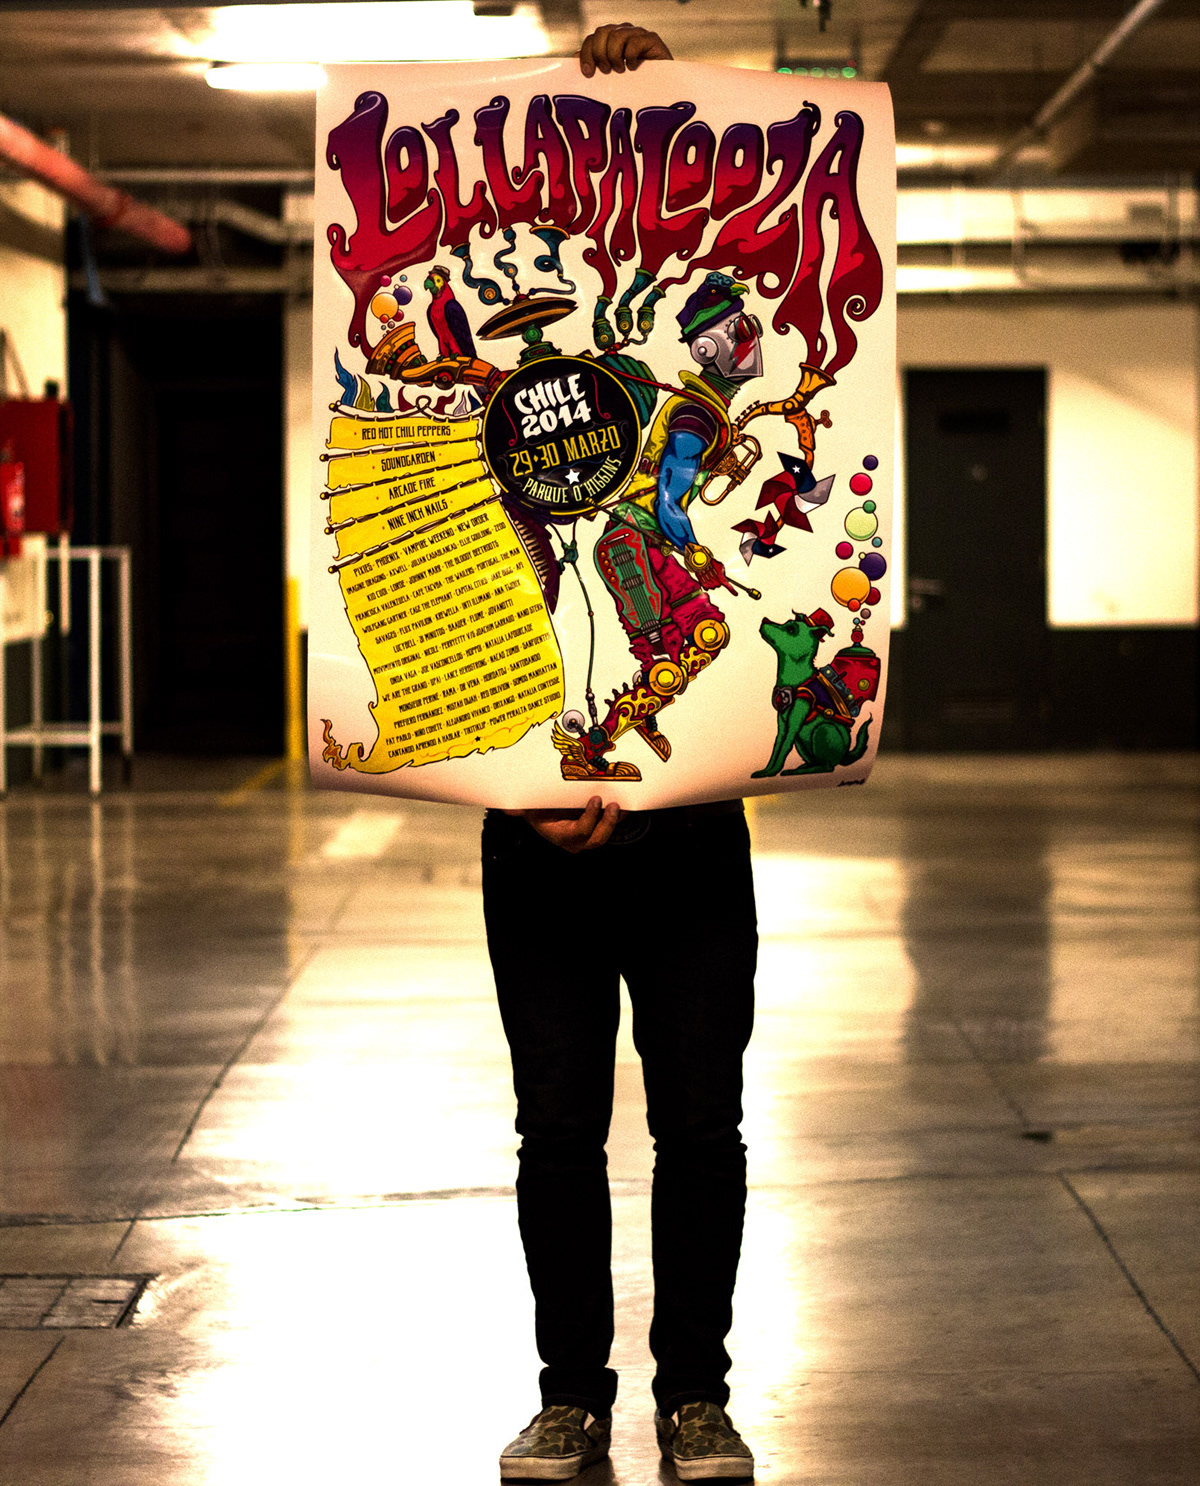 font chile rock rockband GigPoster poster cartel Chinchinero print lollapalooza